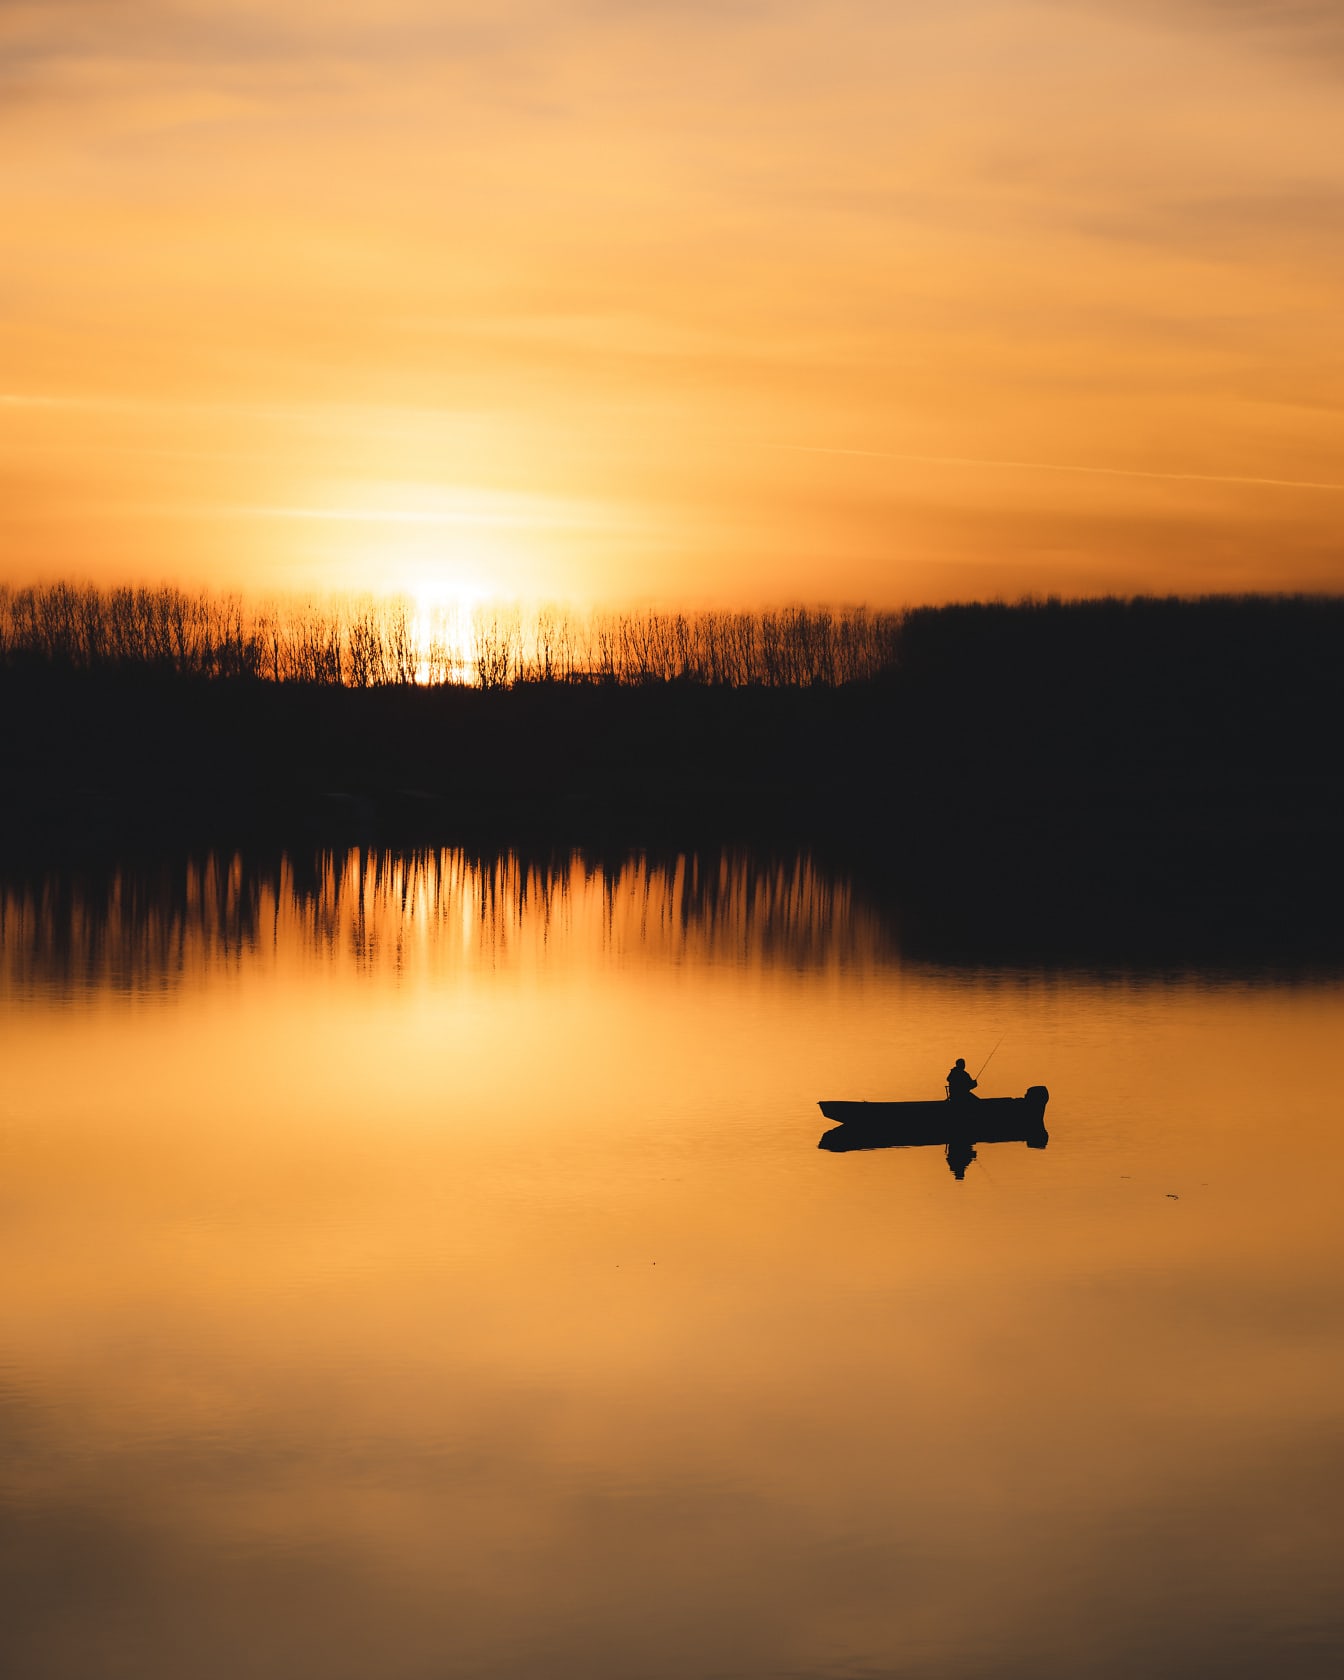 Oransje gul solnedgang på elvebredden med silhuett av fiskebåt